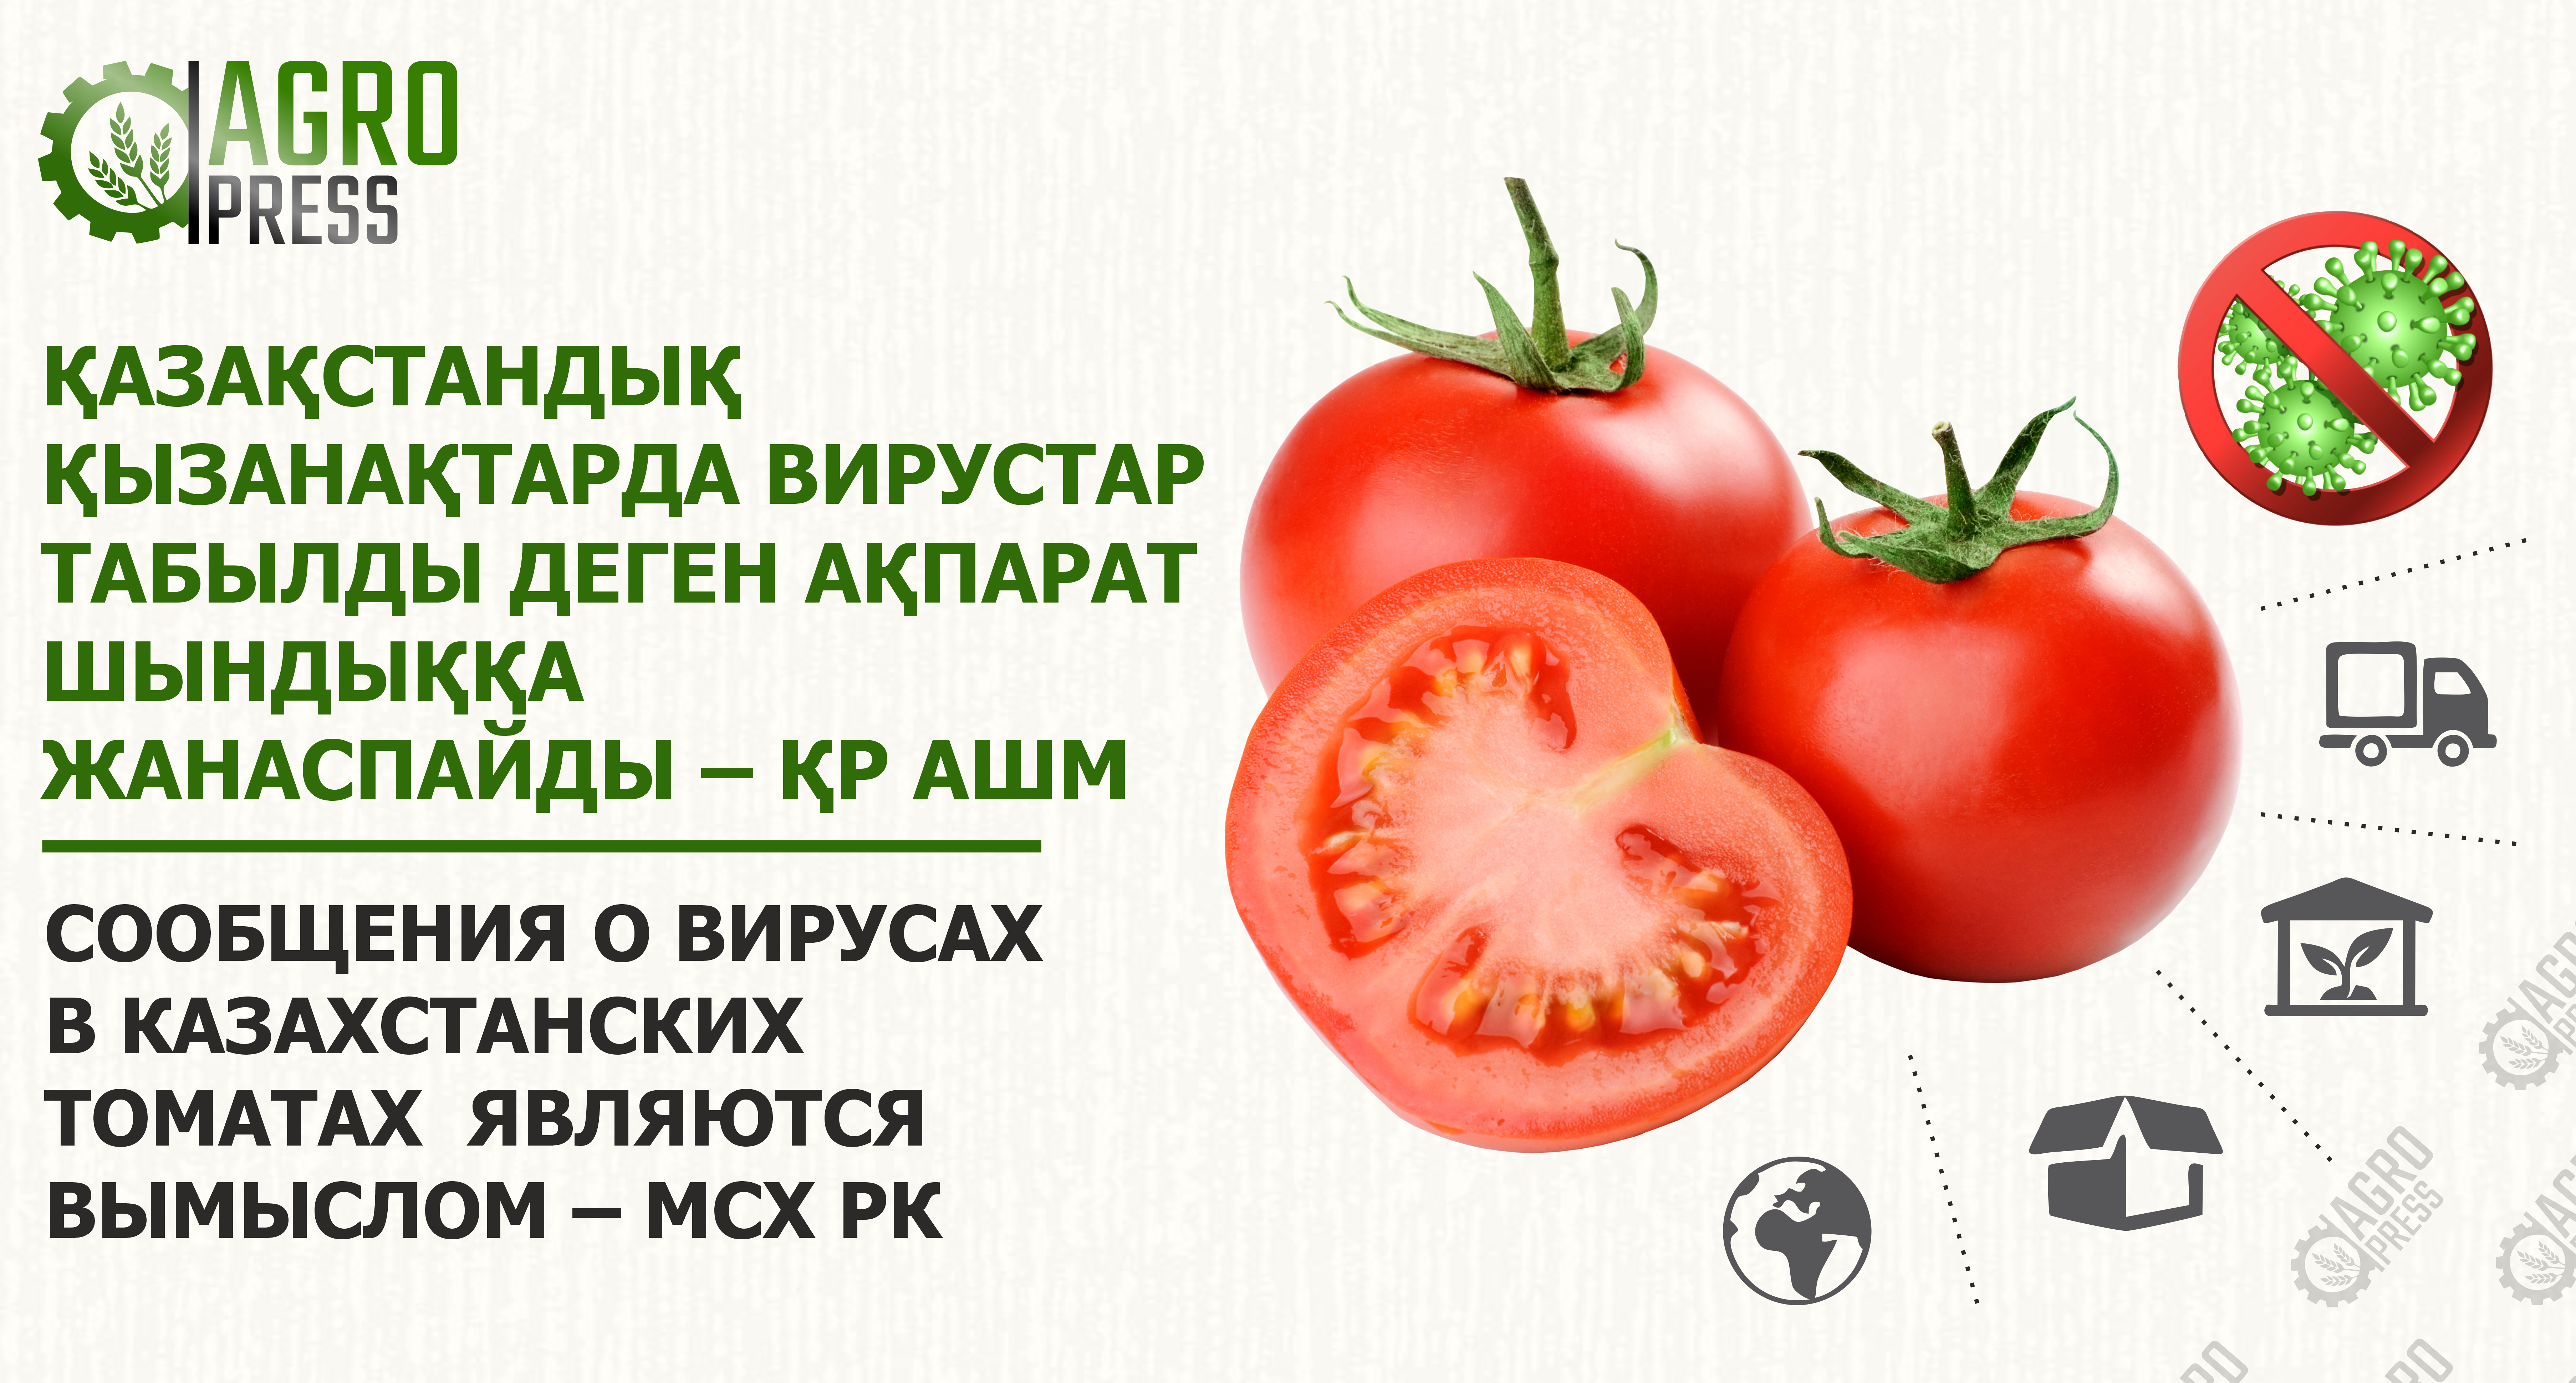 Сообщения о вирусах в казахстанских томатах являются вымыслом – МСХ РК